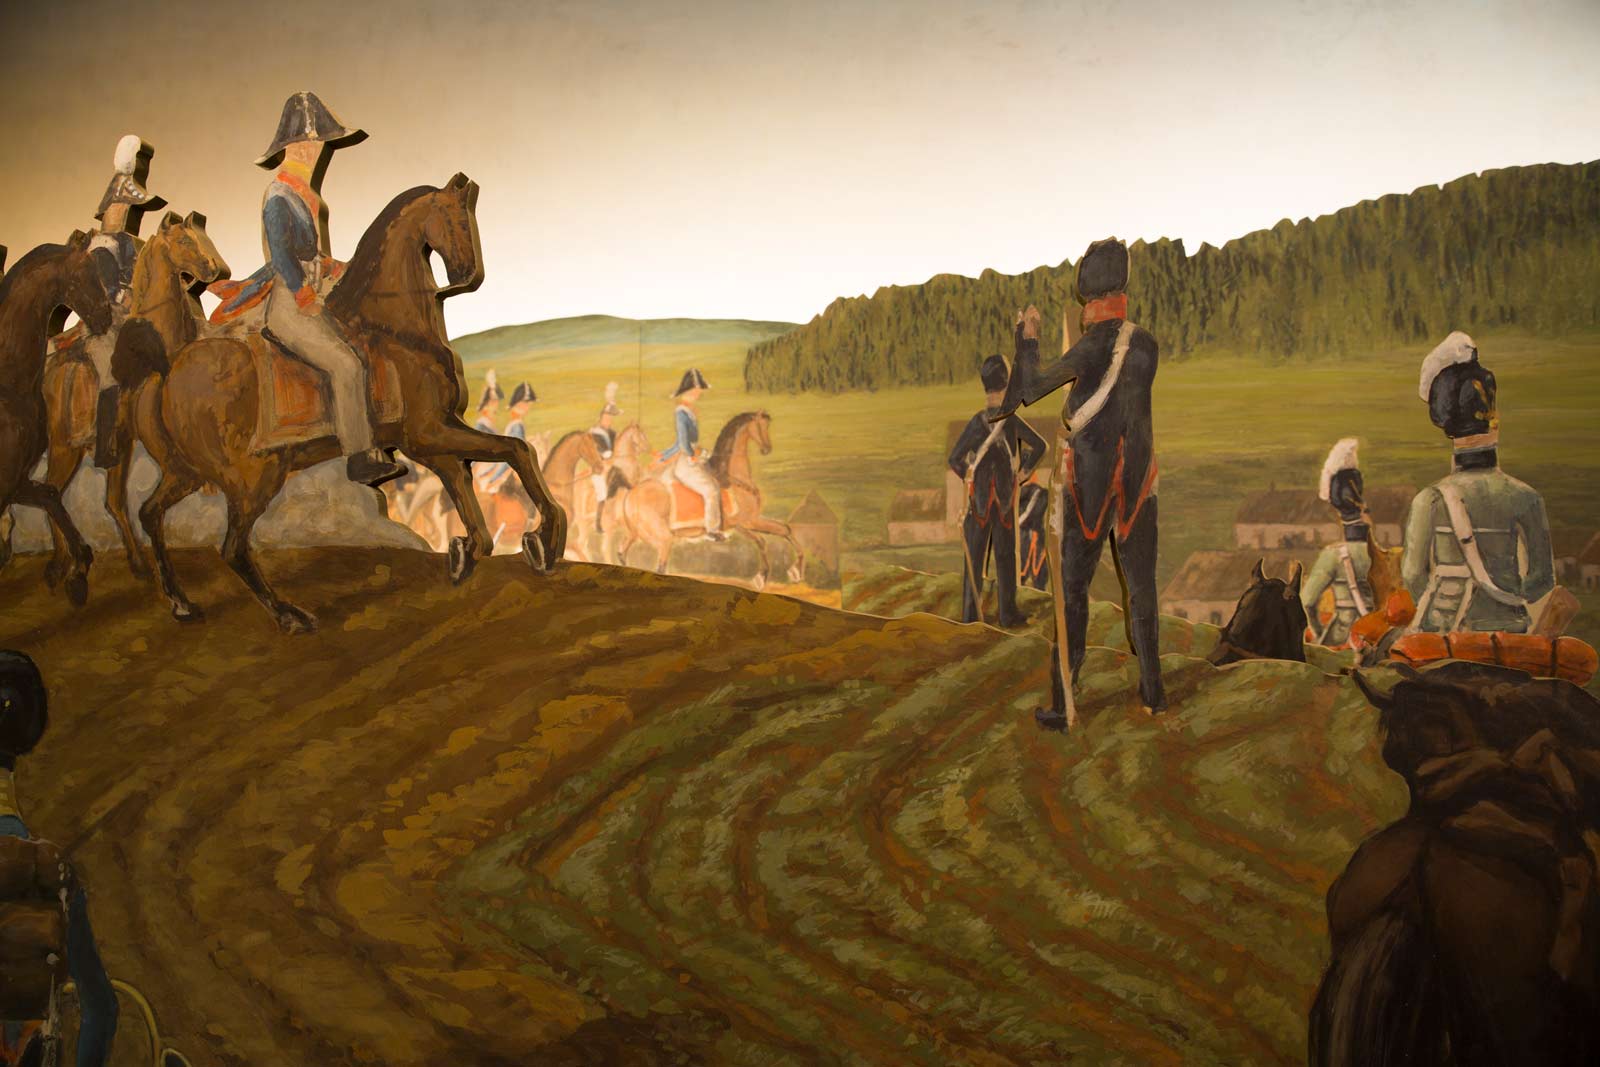 Das Referenzbild für Ausstellungsgestaltung aus der Medieninszenierung „Die Schlacht von Eggmühl“ zeigt den Kulissenbau.